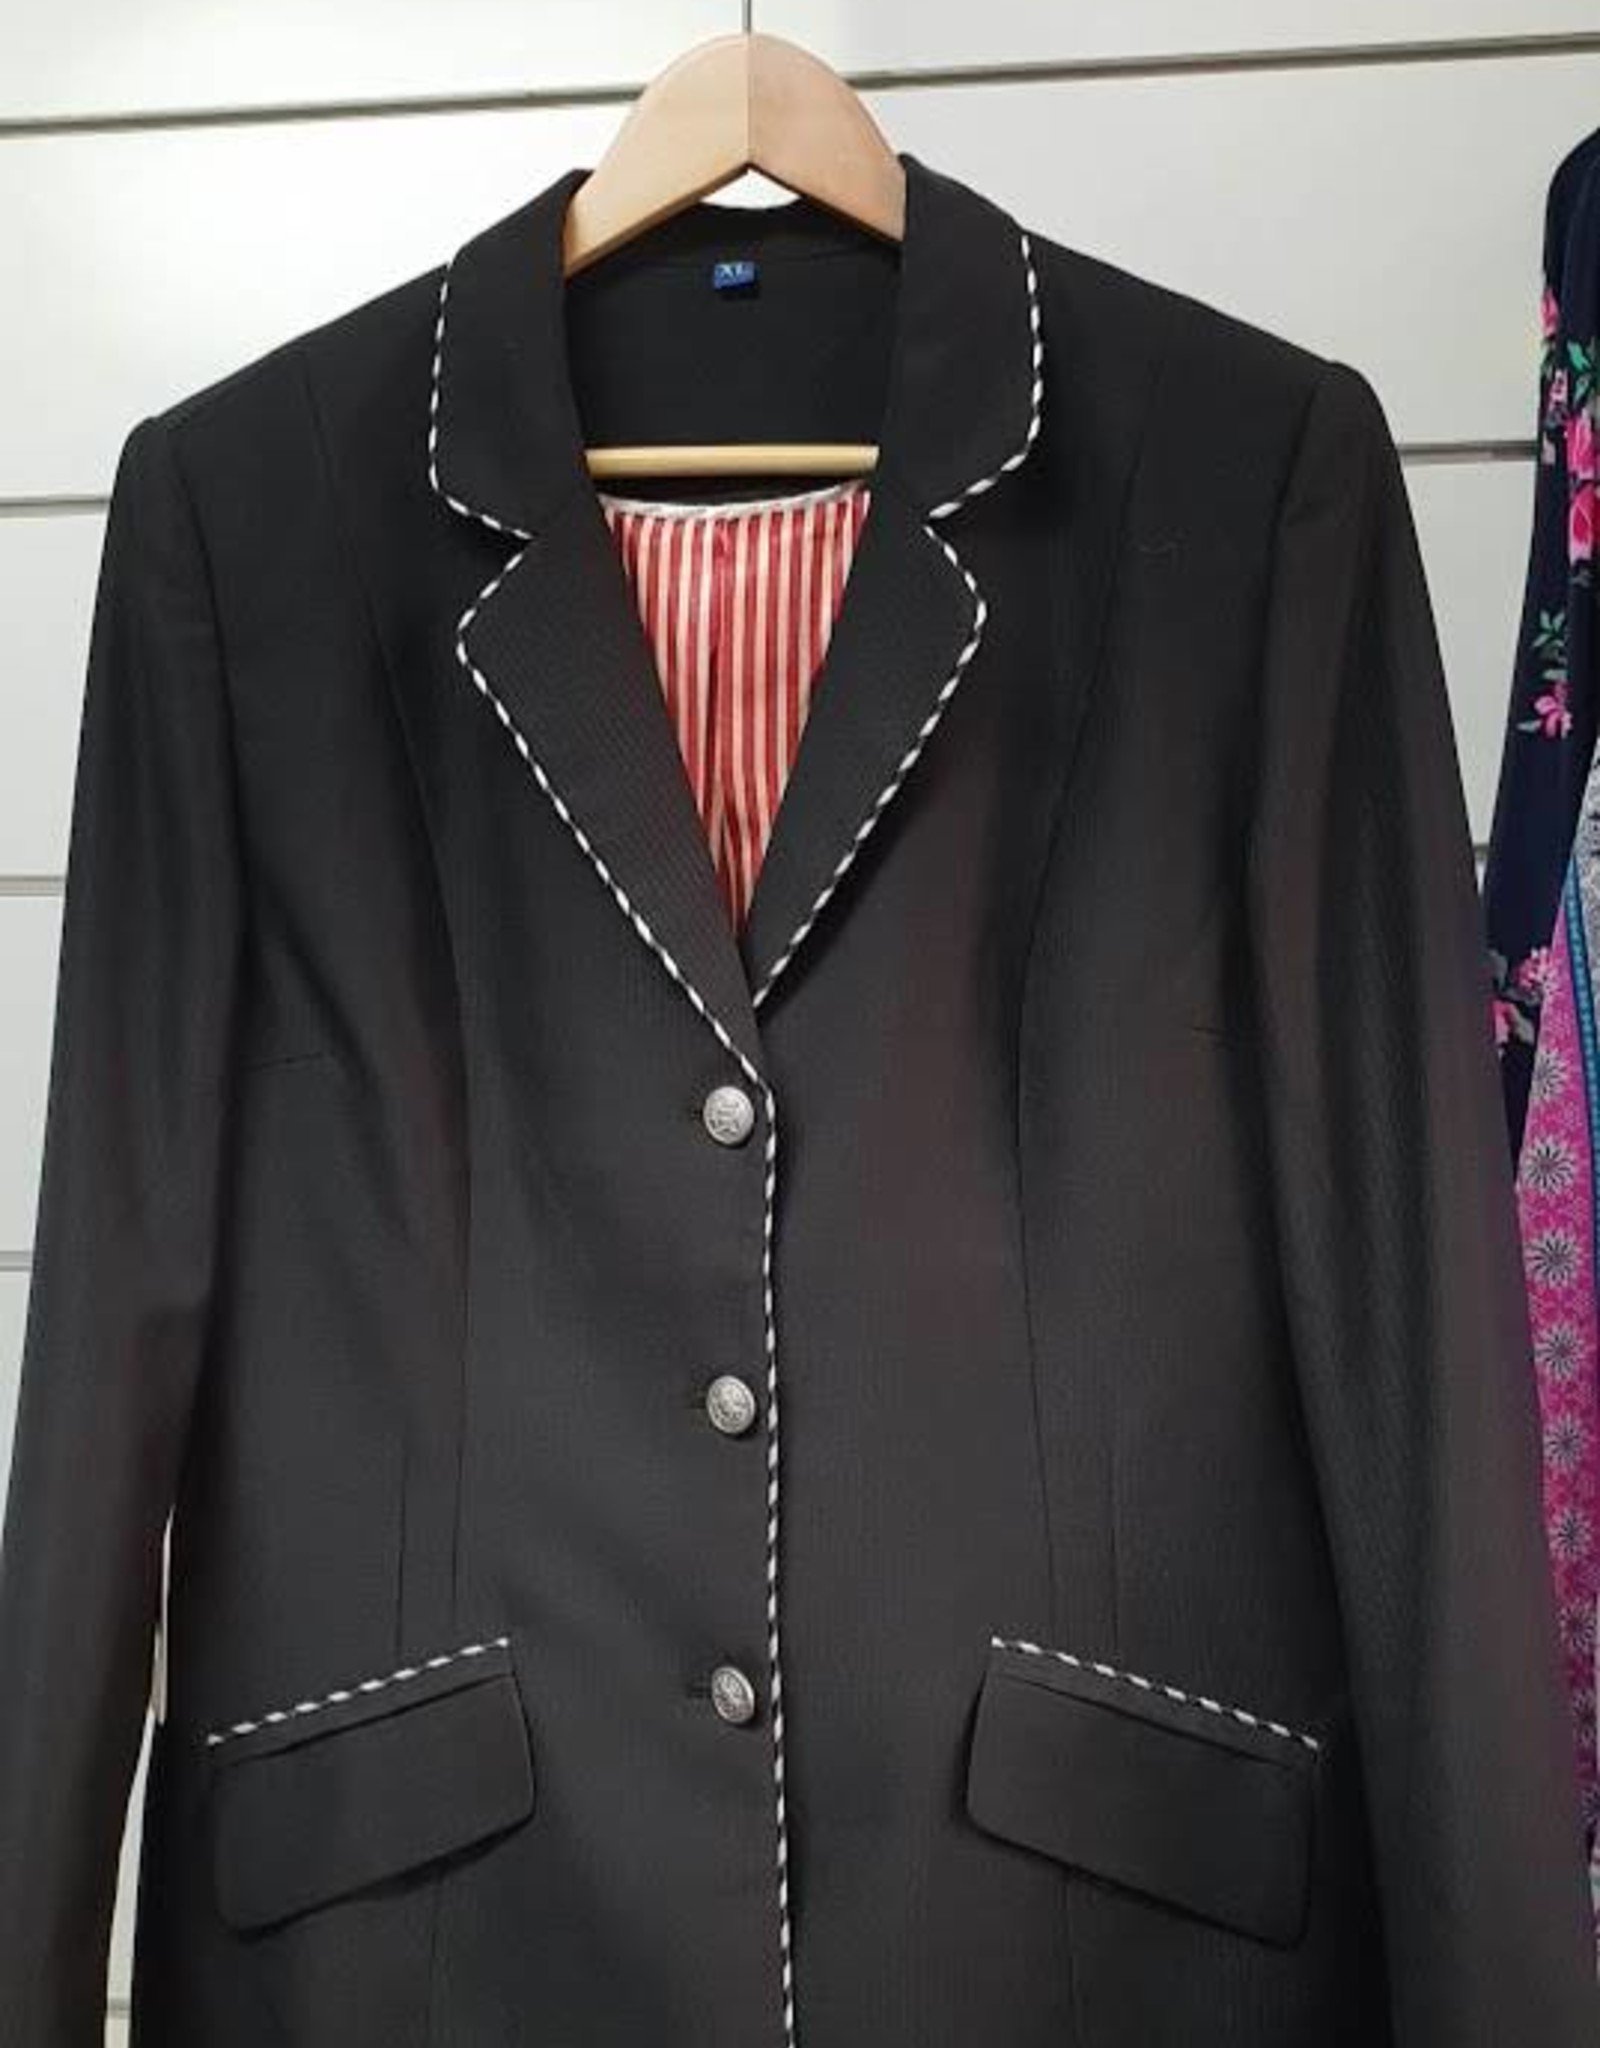 Gidyup Girl Karen Dressage Jacket - Black with Black/White Piping - XL